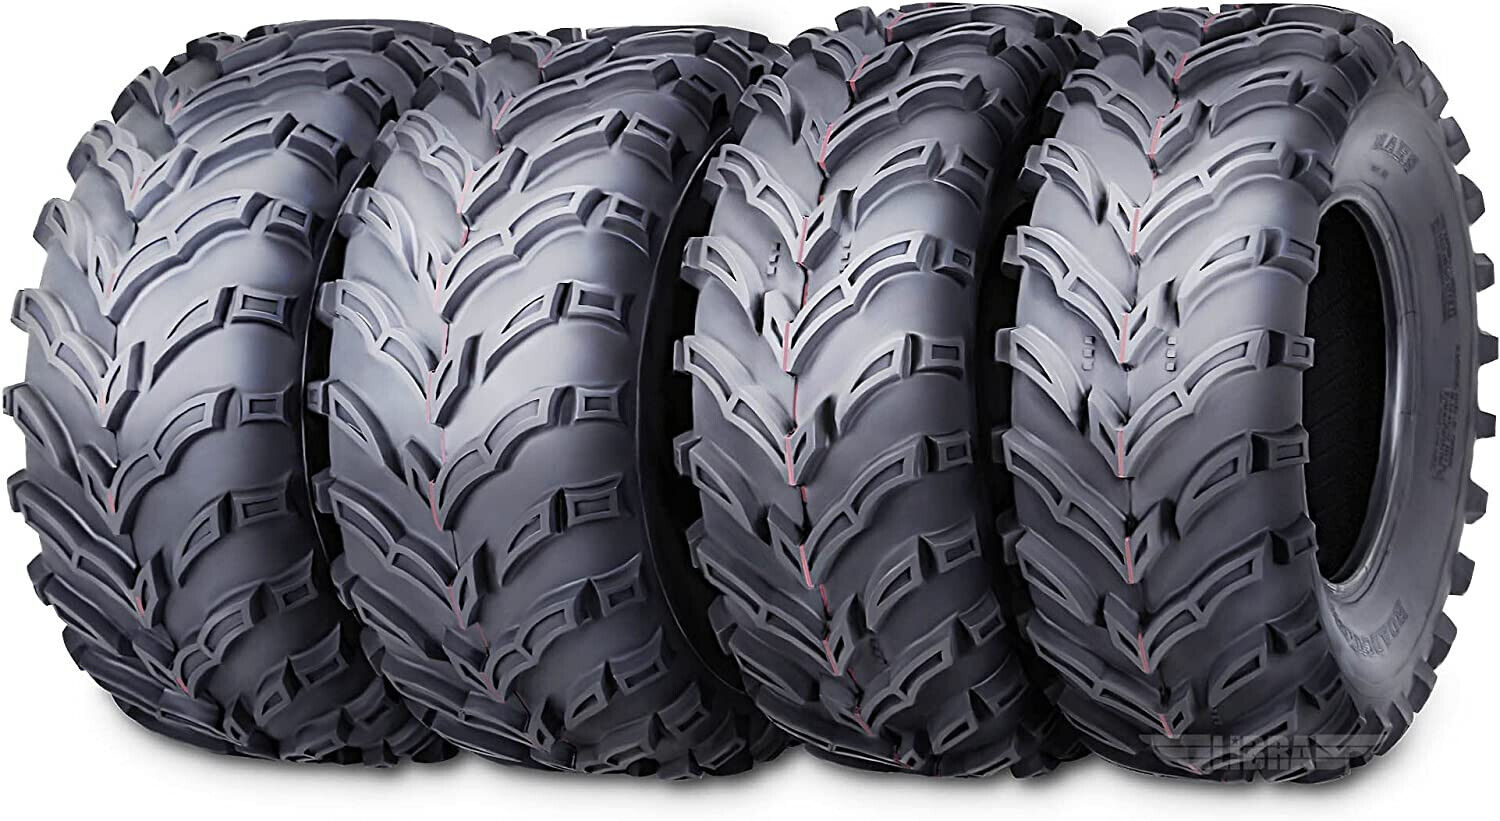 Set 4 UTV ATV Tires 26x9-12 26x9x12 Front 26x11-12 26x11x12 Rear 10275/10276 Mud